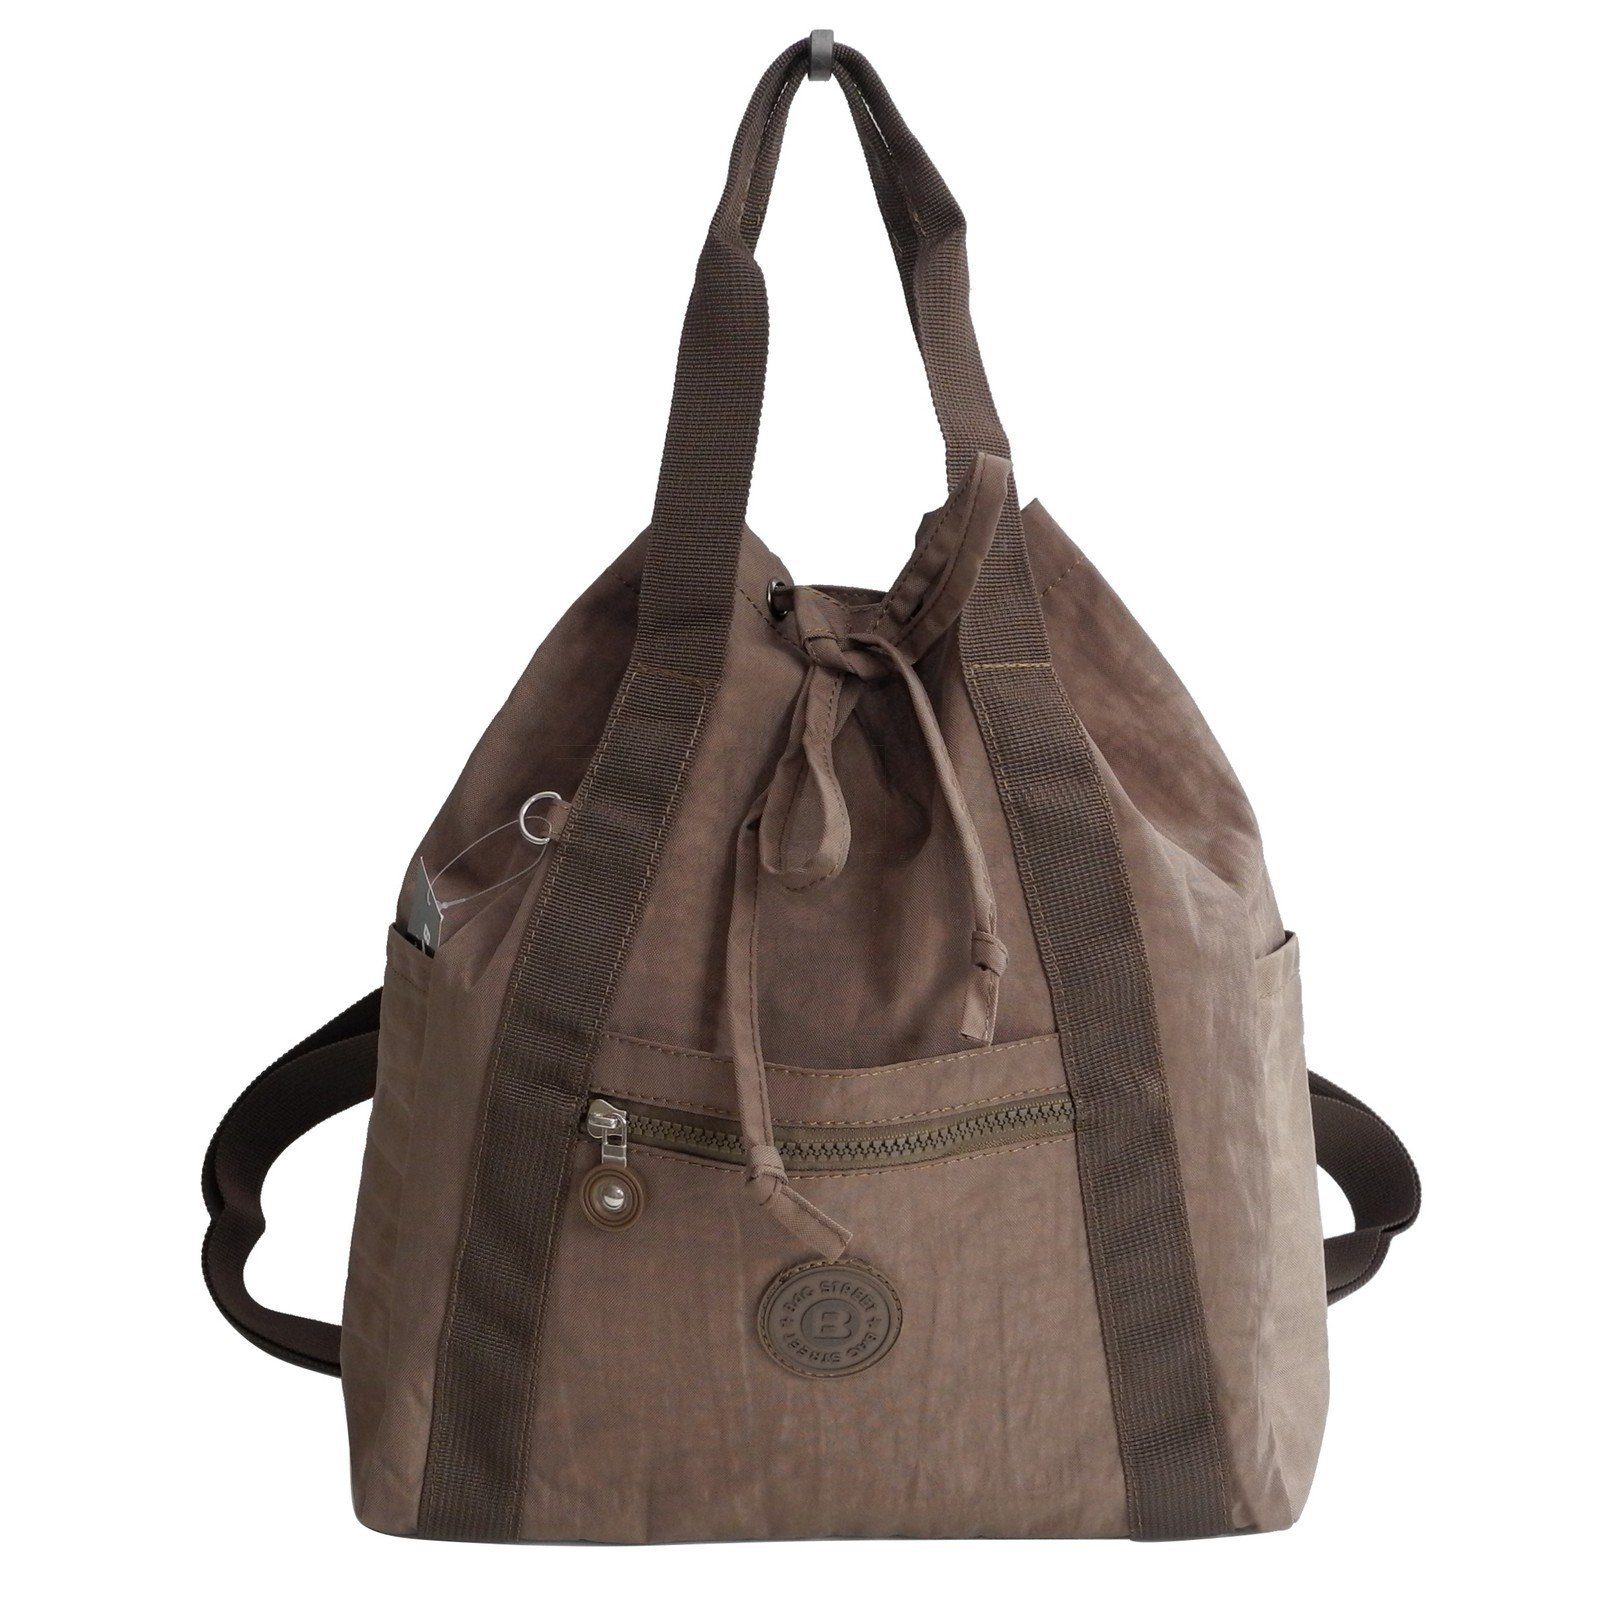 BAG STREET Cityrucksack Bag Street - leichte Damen Rucksackhandtasche Braun